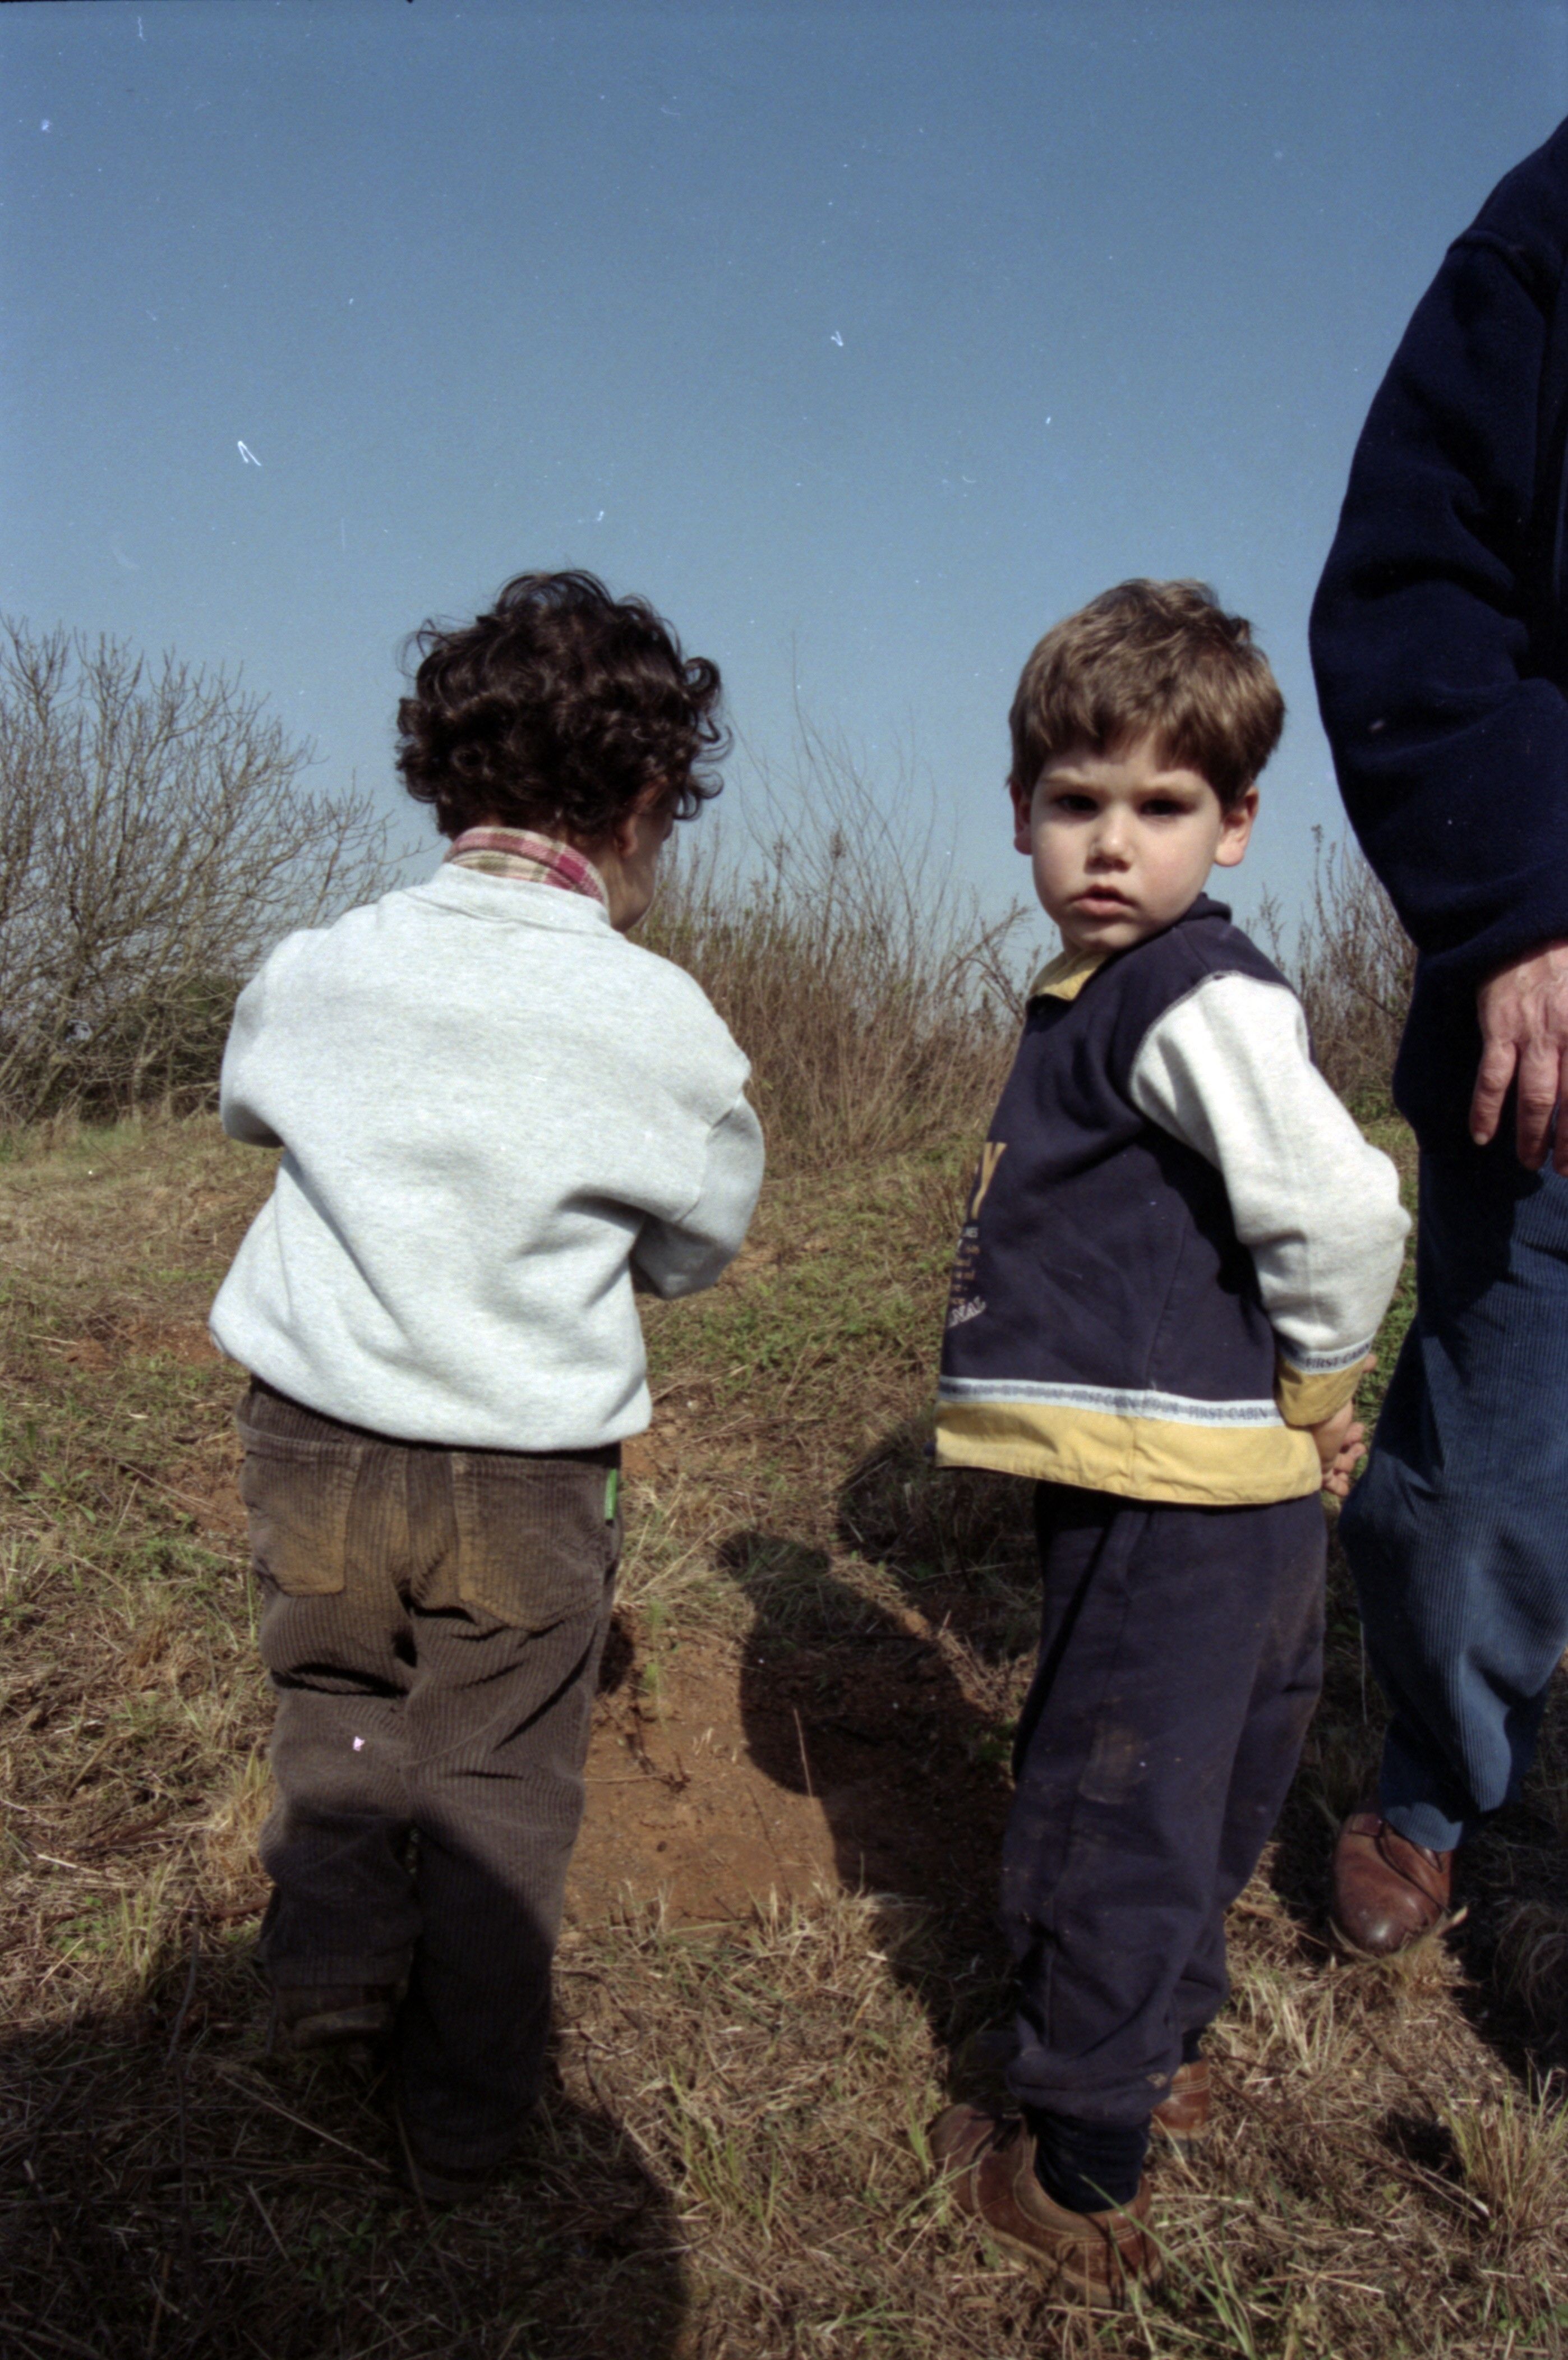 Zona del Pi d'en Xandri, Sant Medir. 3 de març de 1997. FOTO: Àlex Calsina (Fons Premsa local)